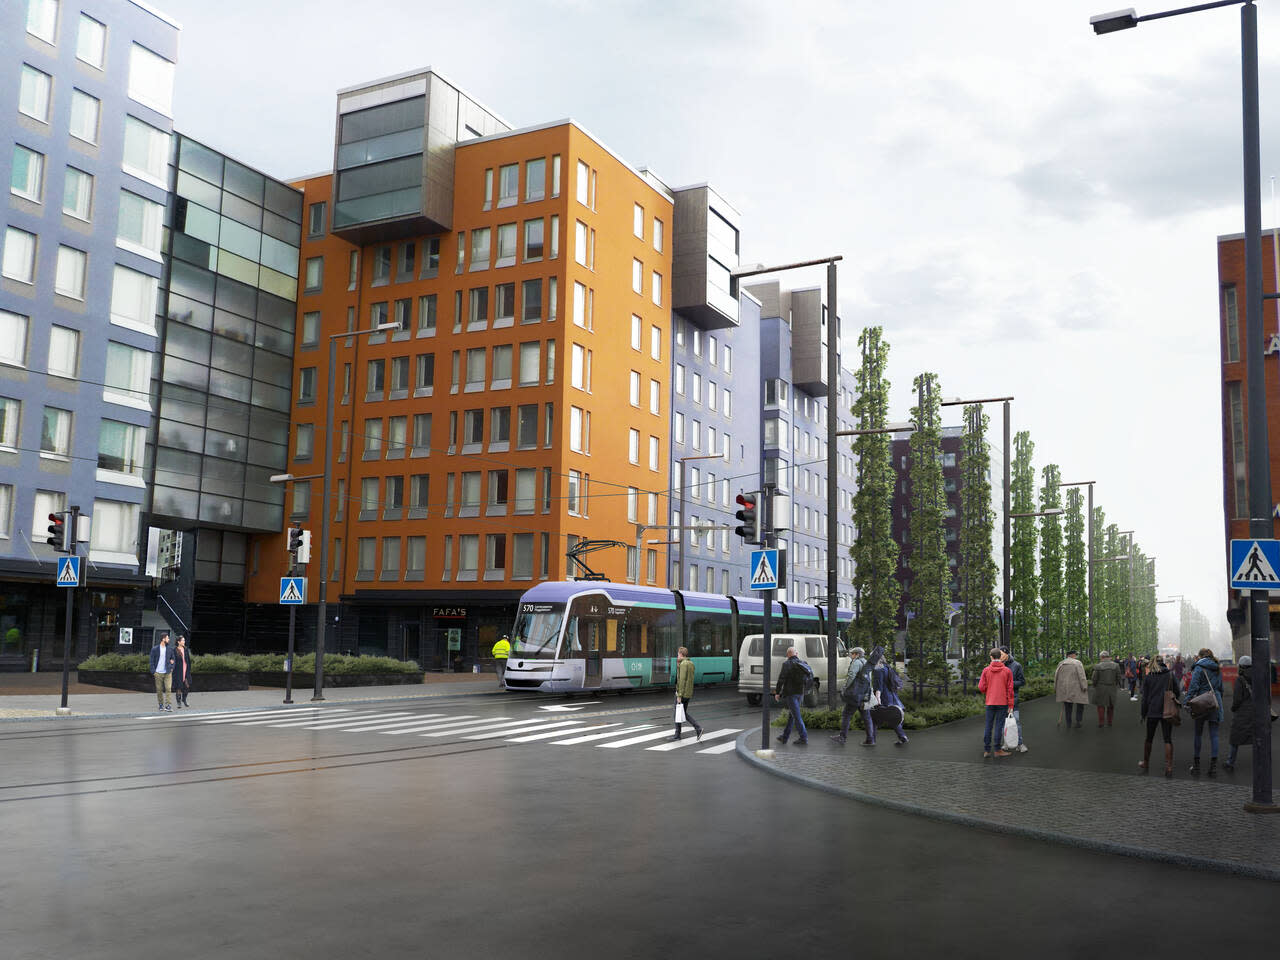 Vantaa genehmigt das Straßenbahnprojekt